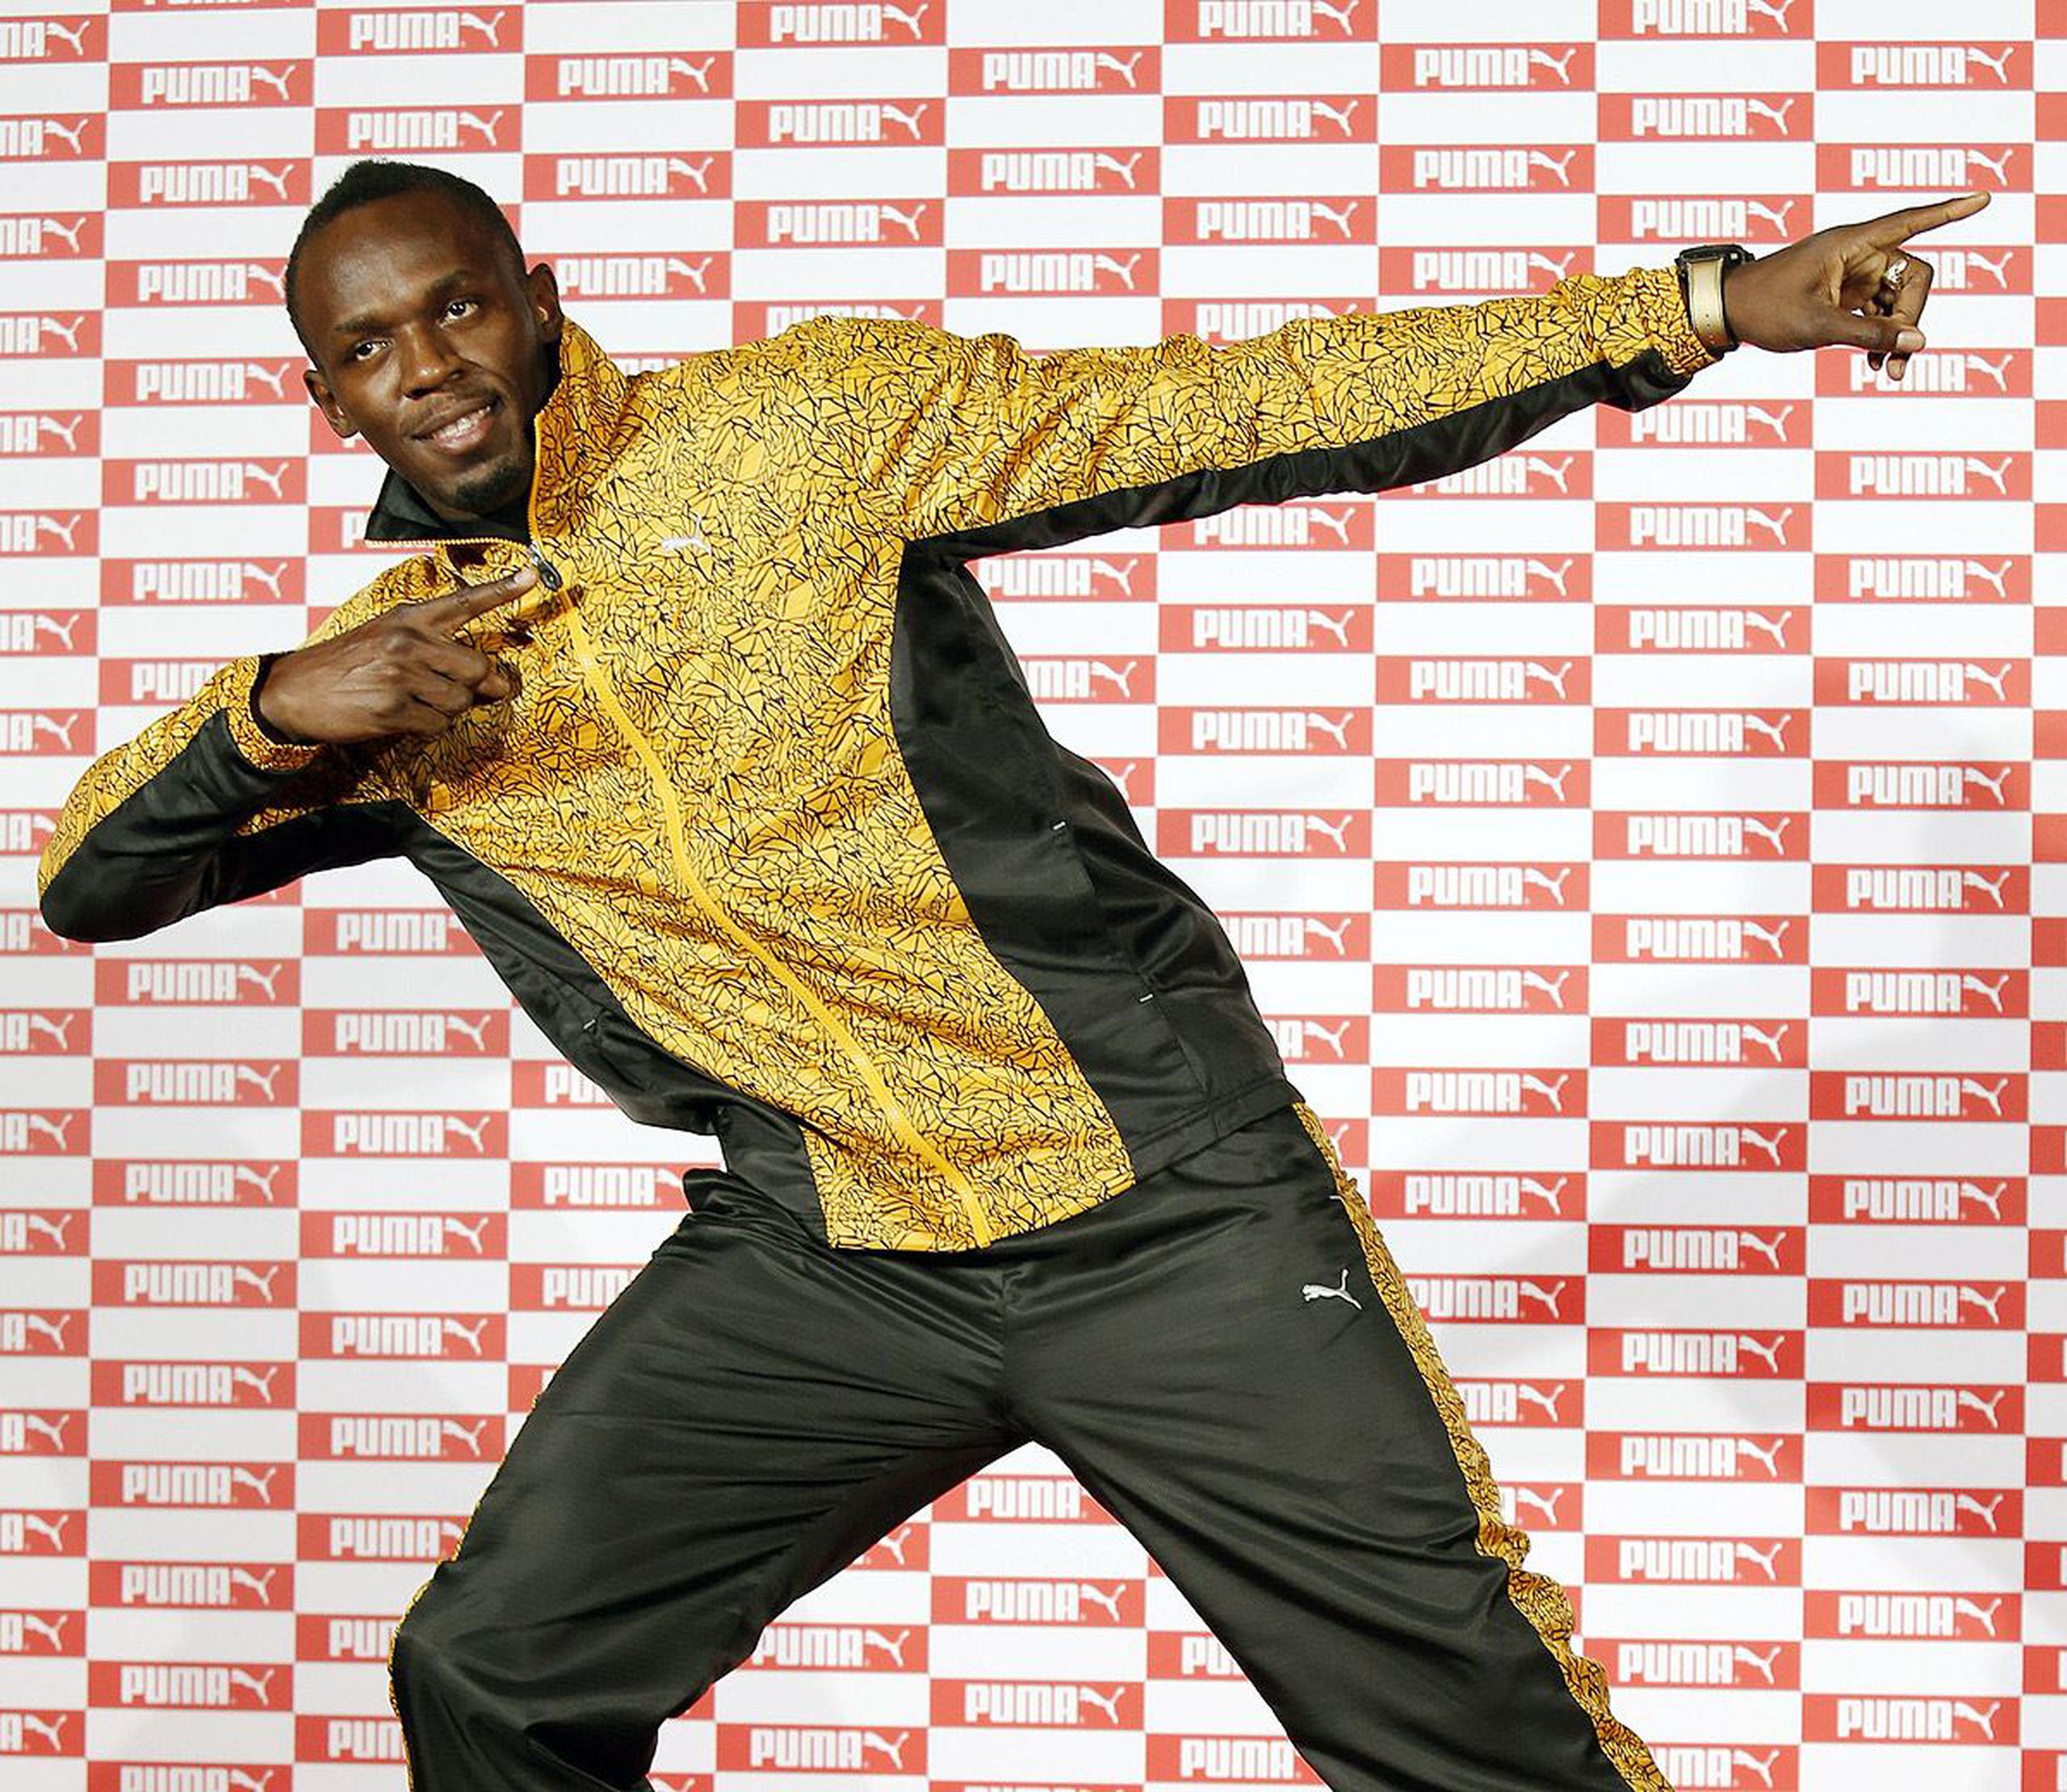 Bolt competirá en el 2017 sólo en los 100 metros. (Agencia EFE)